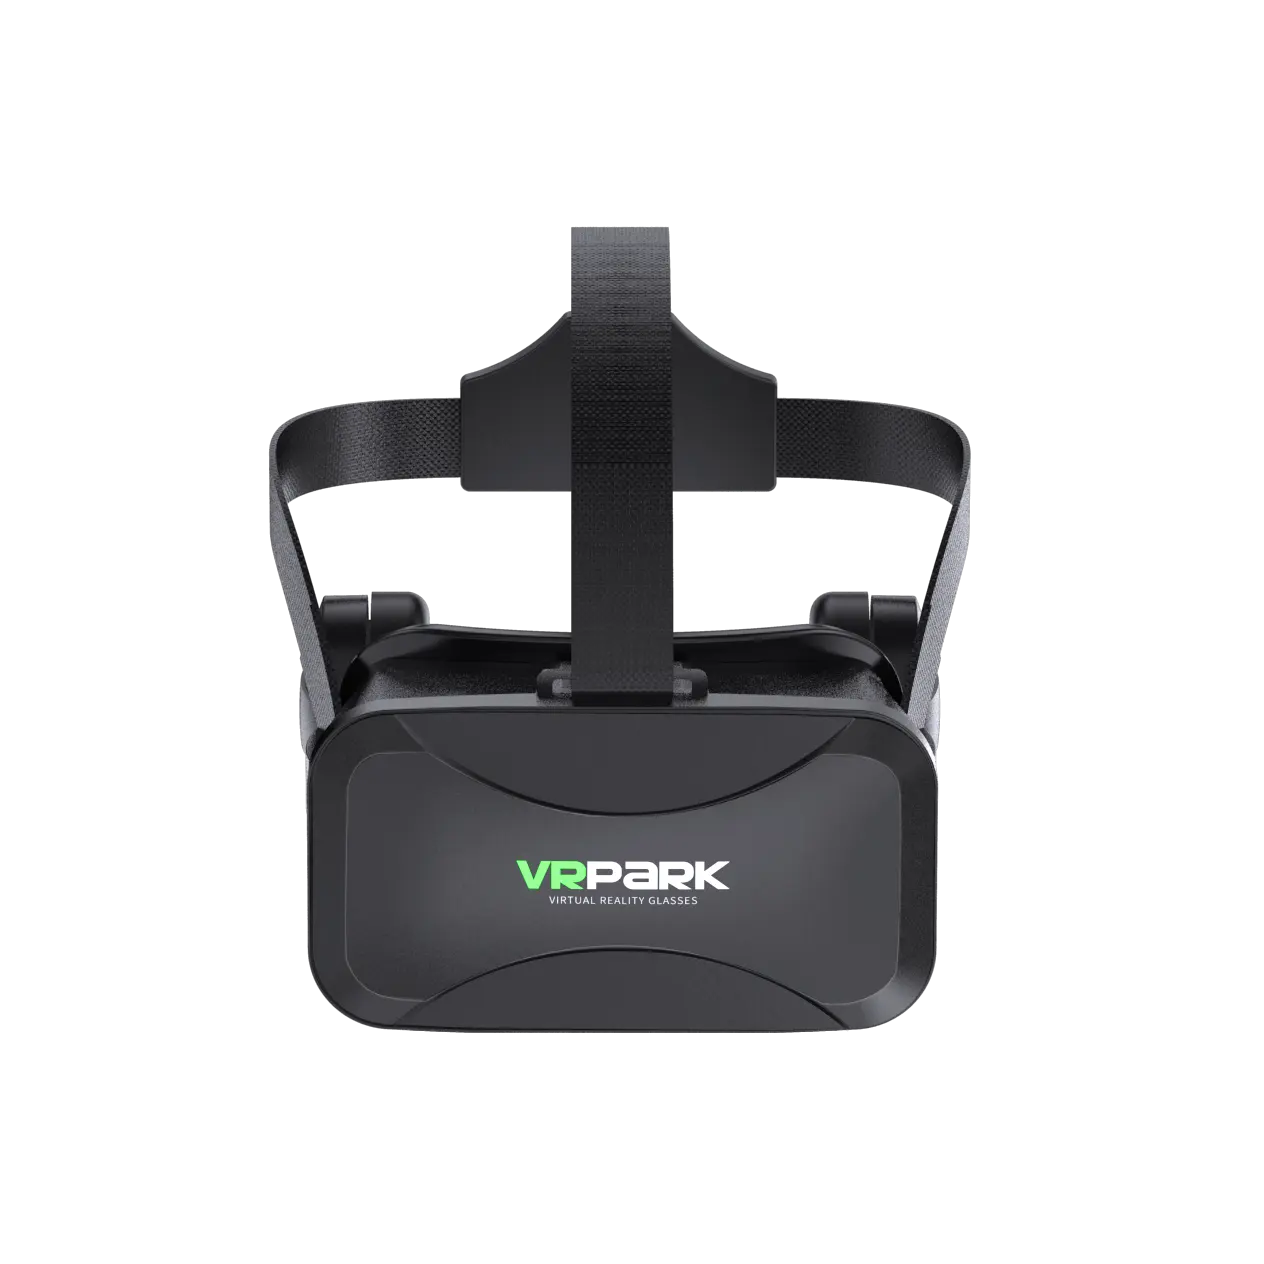 Vrpark J30 Vr Bril Virtual Reality 3D Bril Helm Met Hifi Stereo Headset Voor 4.7-6.7 Inch Smart Phone